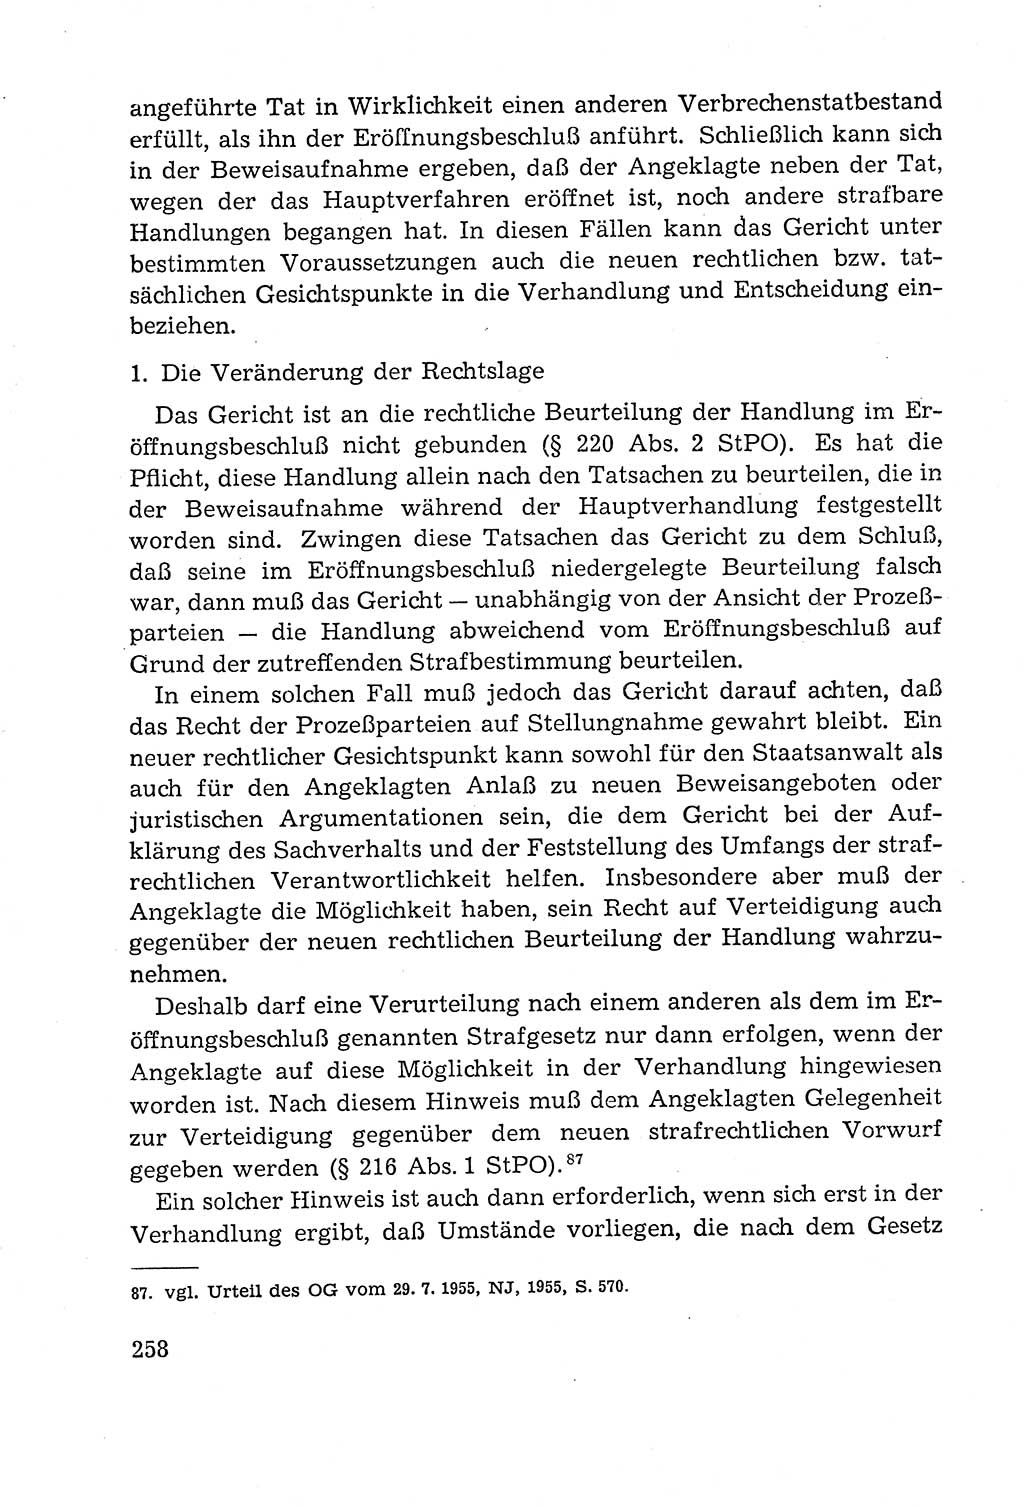 Leitfaden des Strafprozeßrechts der Deutschen Demokratischen Republik (DDR) 1959, Seite 258 (LF StPR DDR 1959, S. 258)